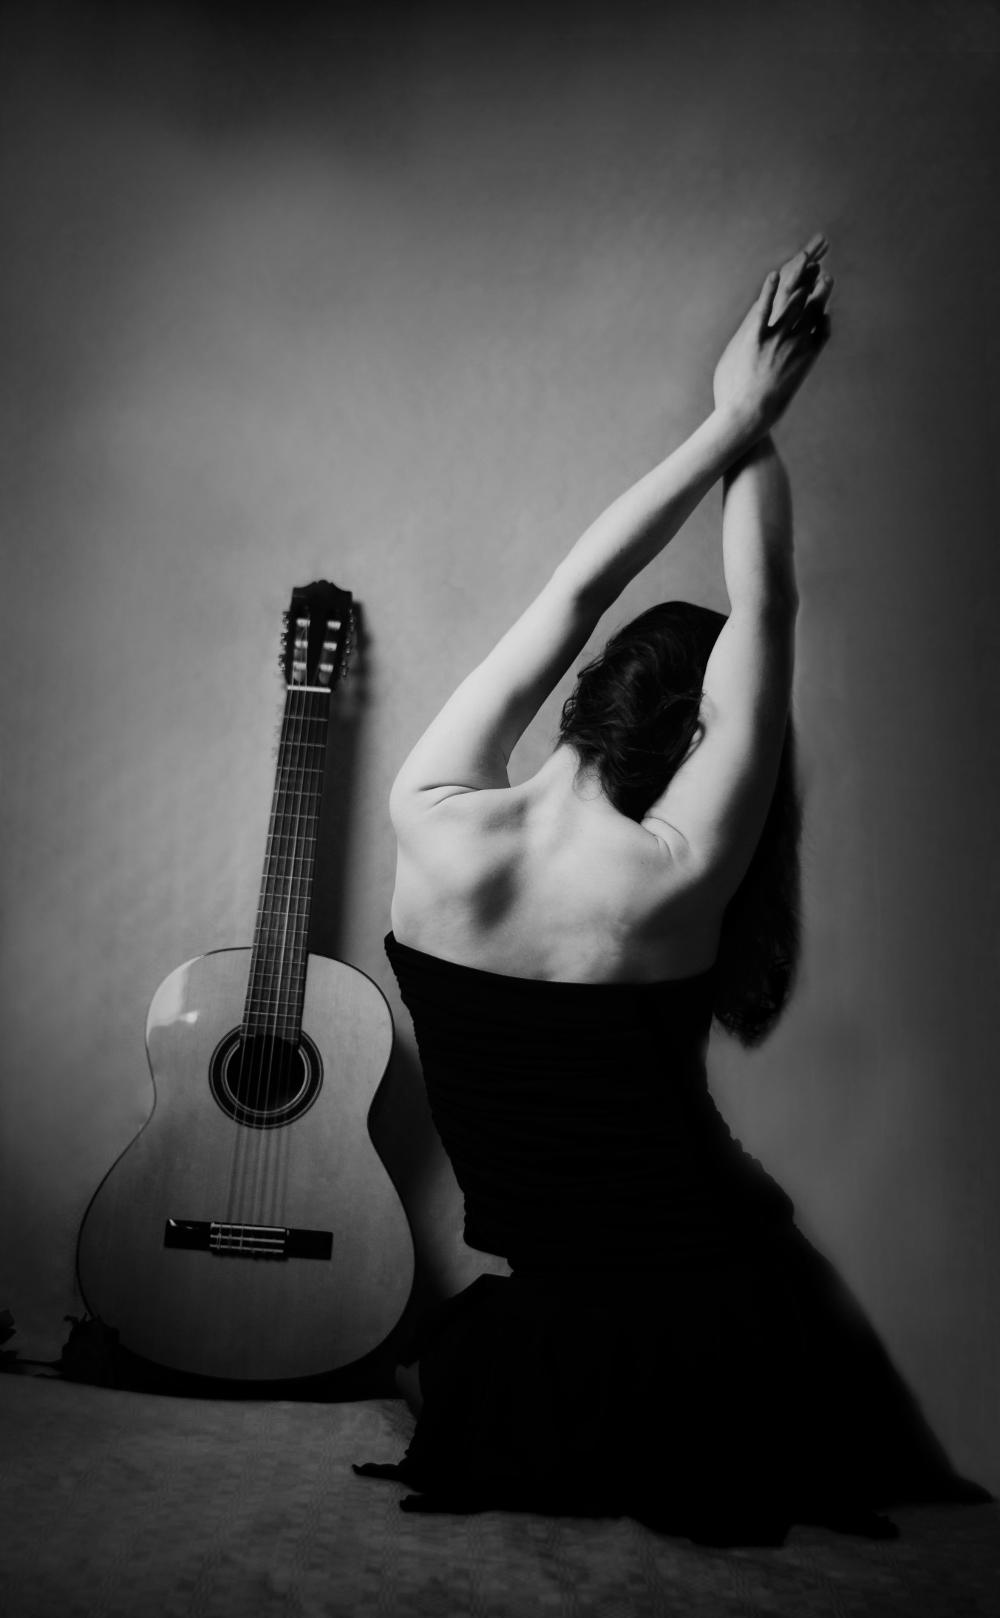 Elena Dancer 3 by Marilyn Polignac Photography